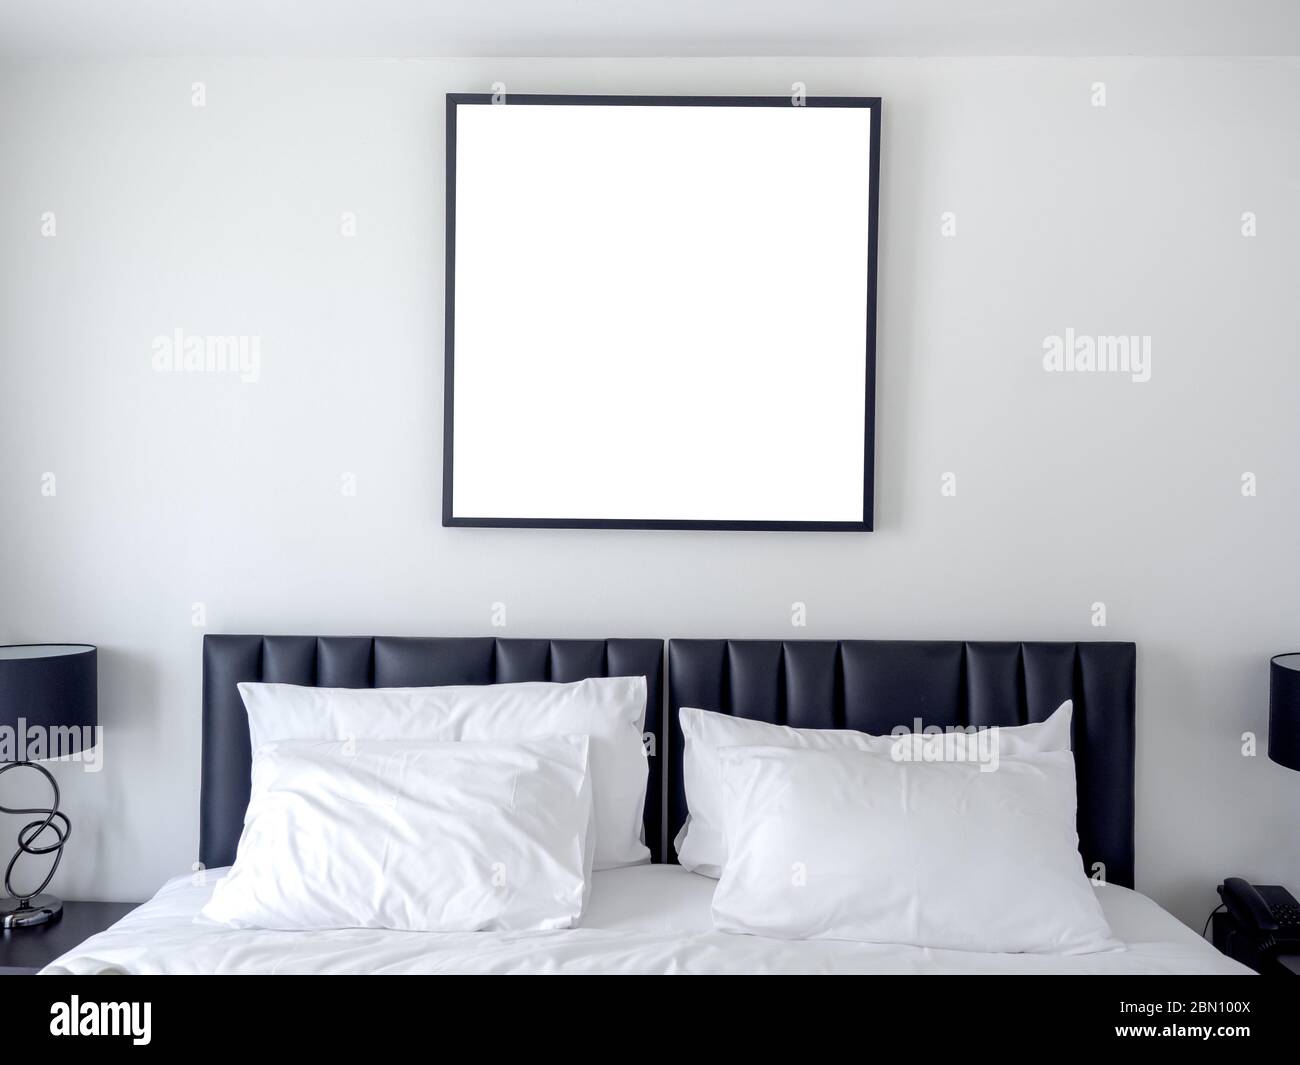 Foto in bianco cornice quadrata mockup su parete bianca sopra il letto con bianchi cuscini puliti in camera da letto. Foto Stock